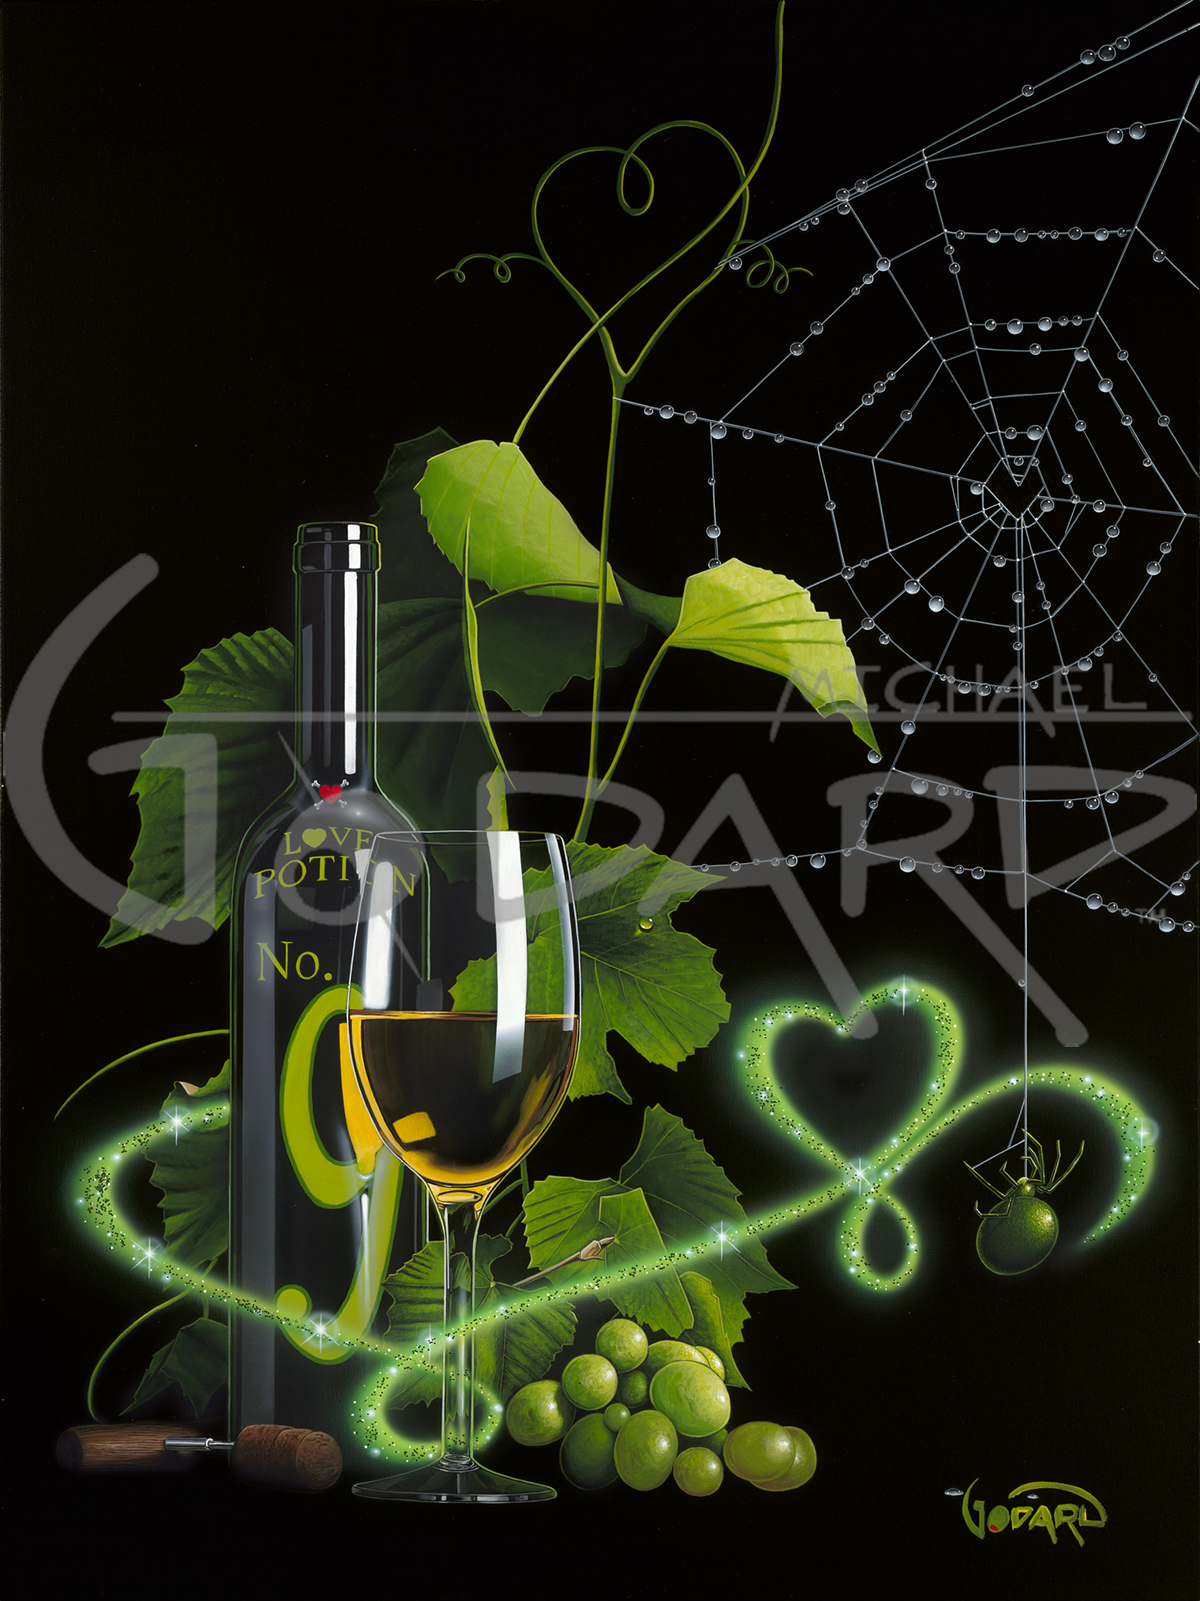 Michael Godard Love Potion No. 9 (GP)